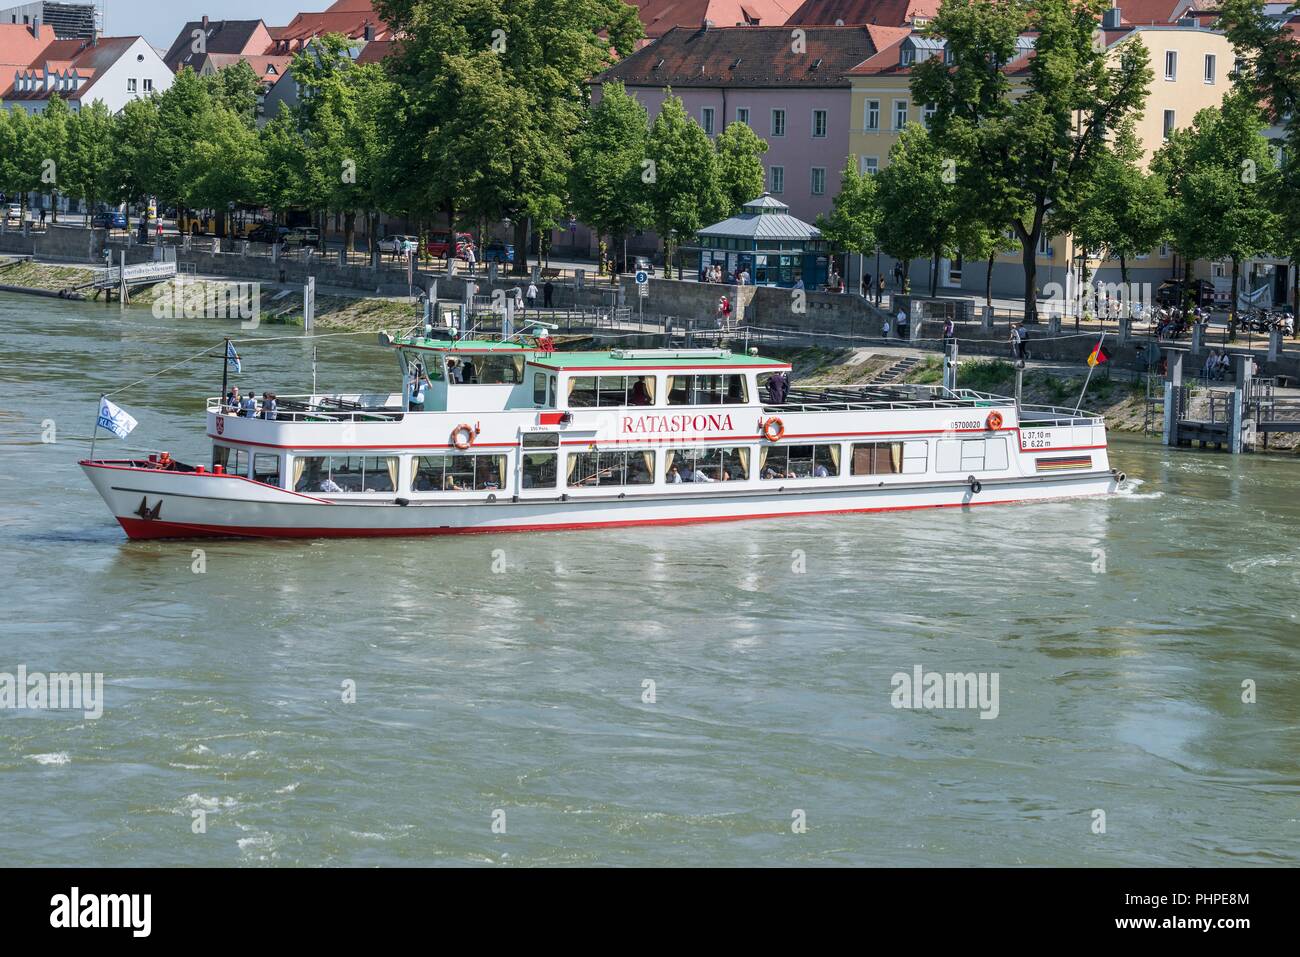 Regensburg, Germany, Mai 18, 2018, Danube tour in Regensburg by ship Rataspona Stock Photo